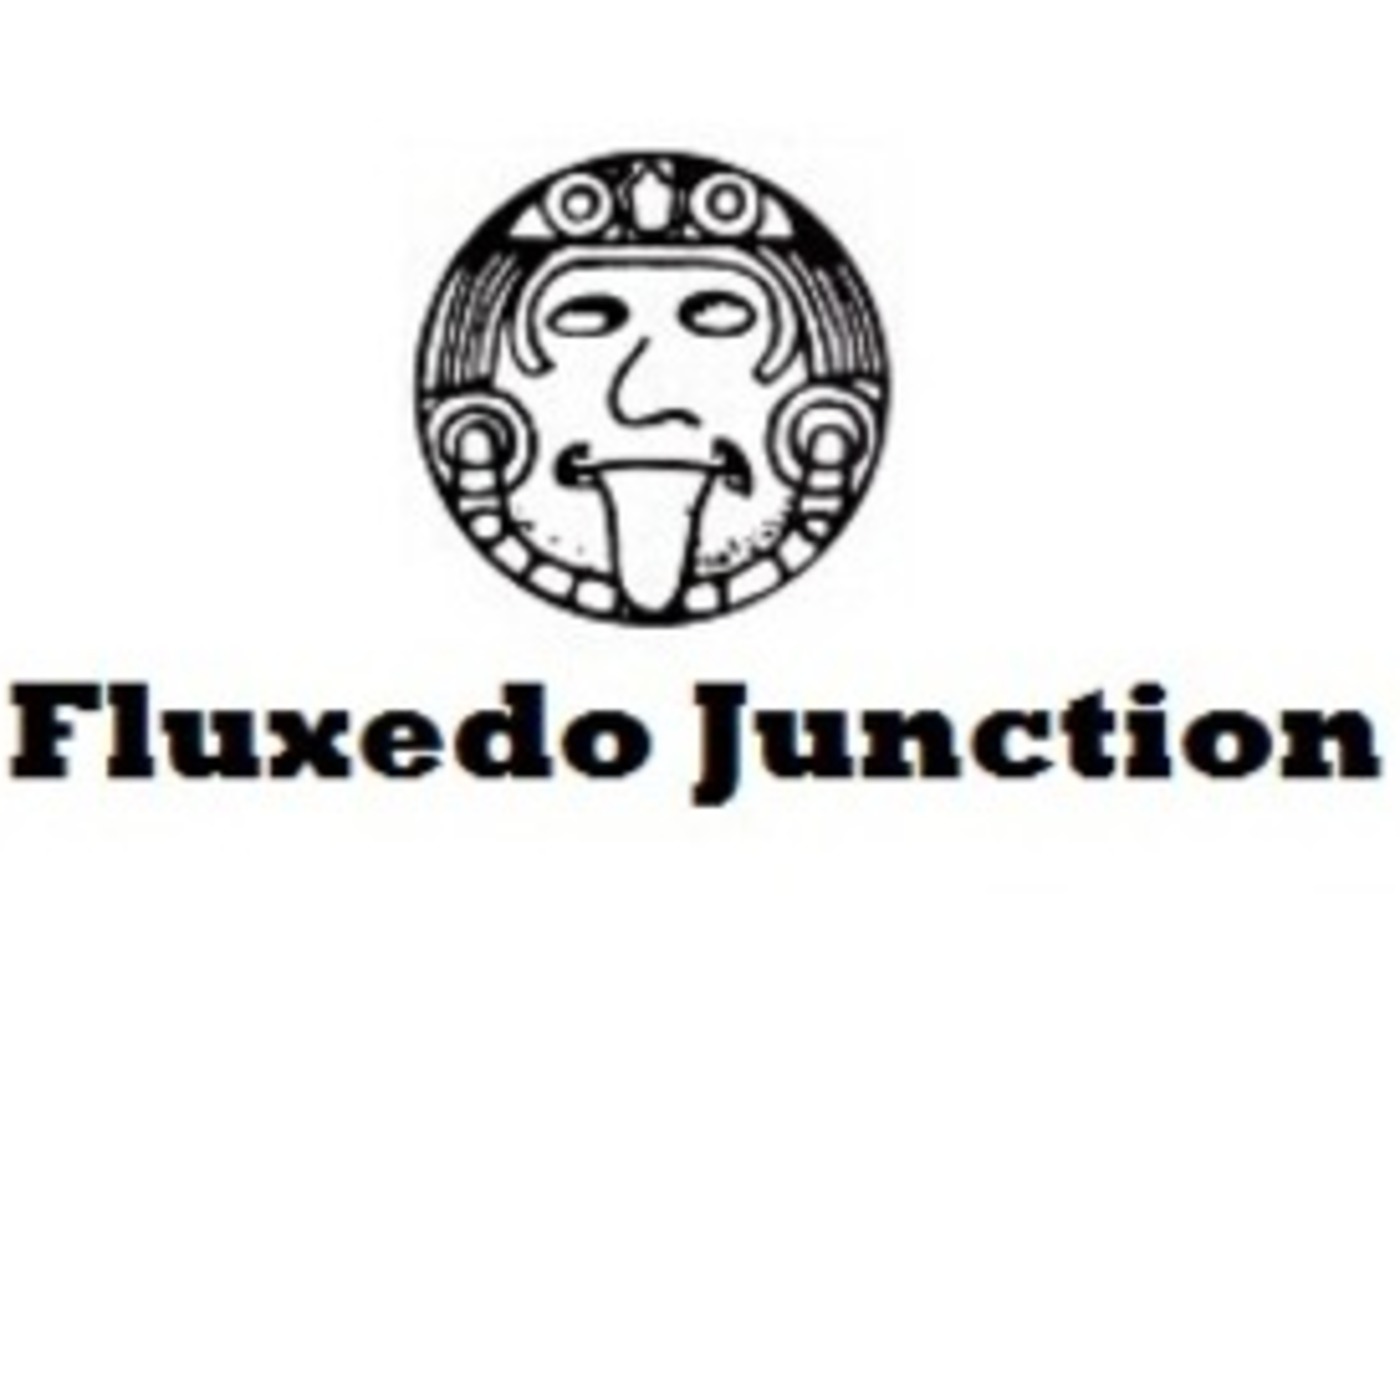 Fluxedo Junction